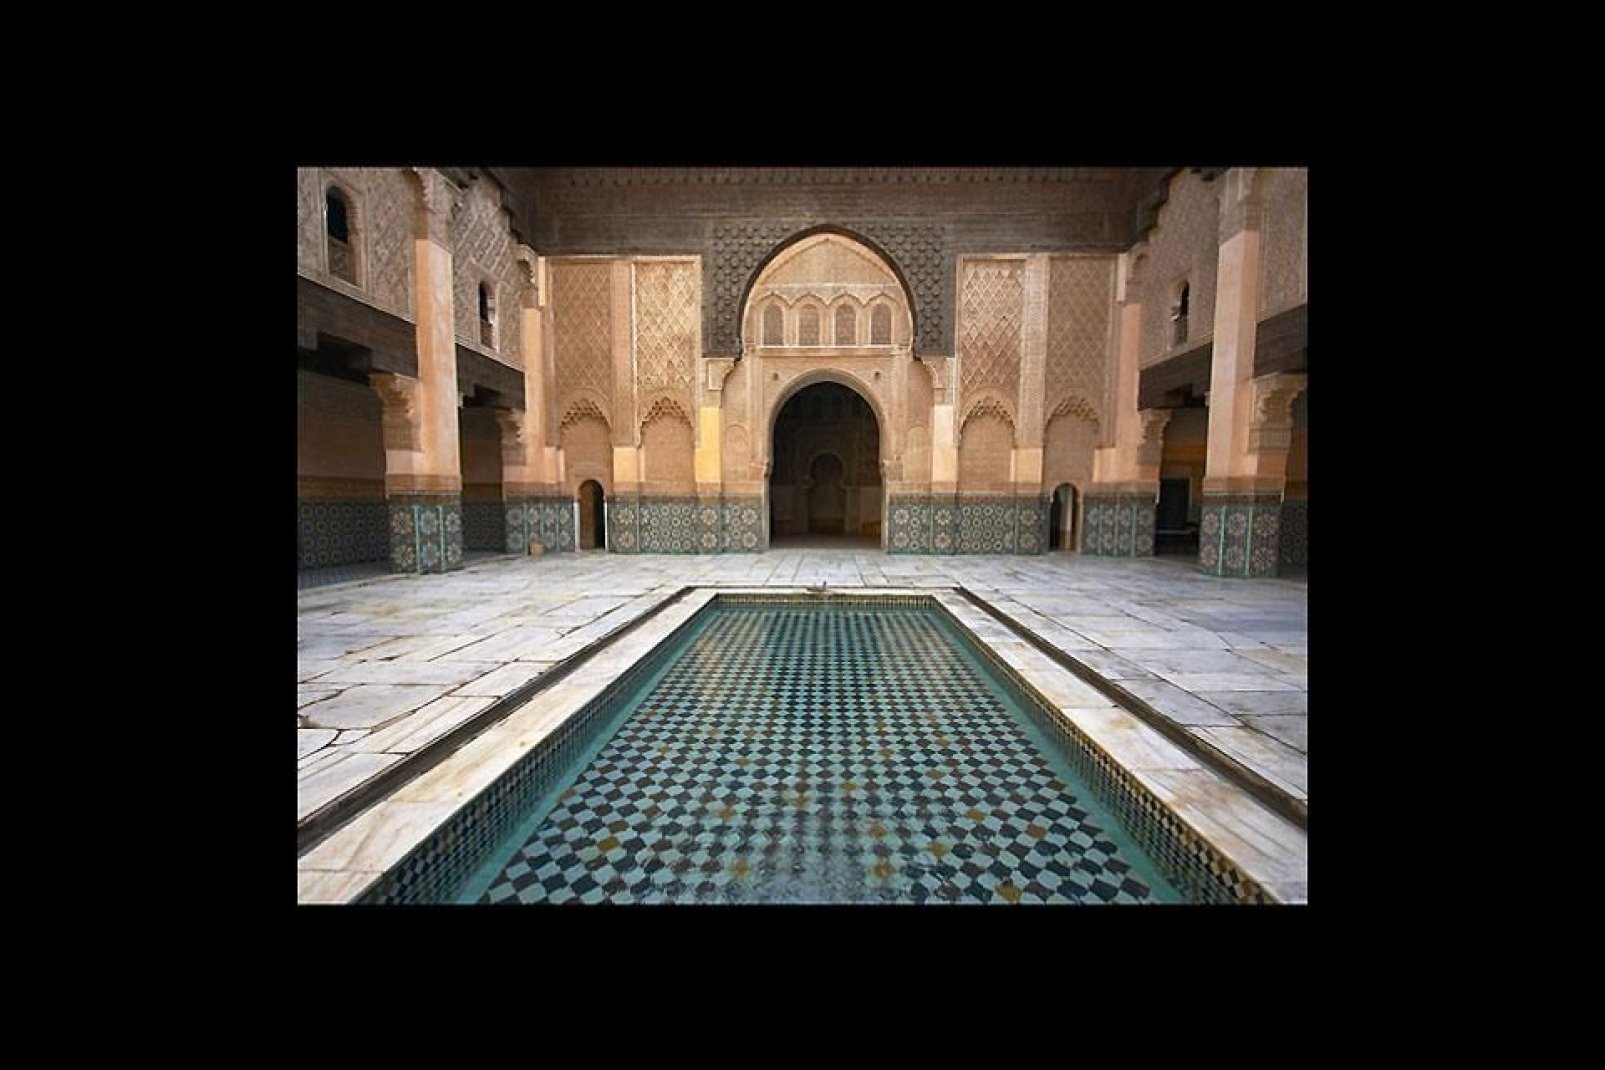 Cette école islamique est probablement la plus belle représentation architecturale de Marrakech et la mieux conservée.